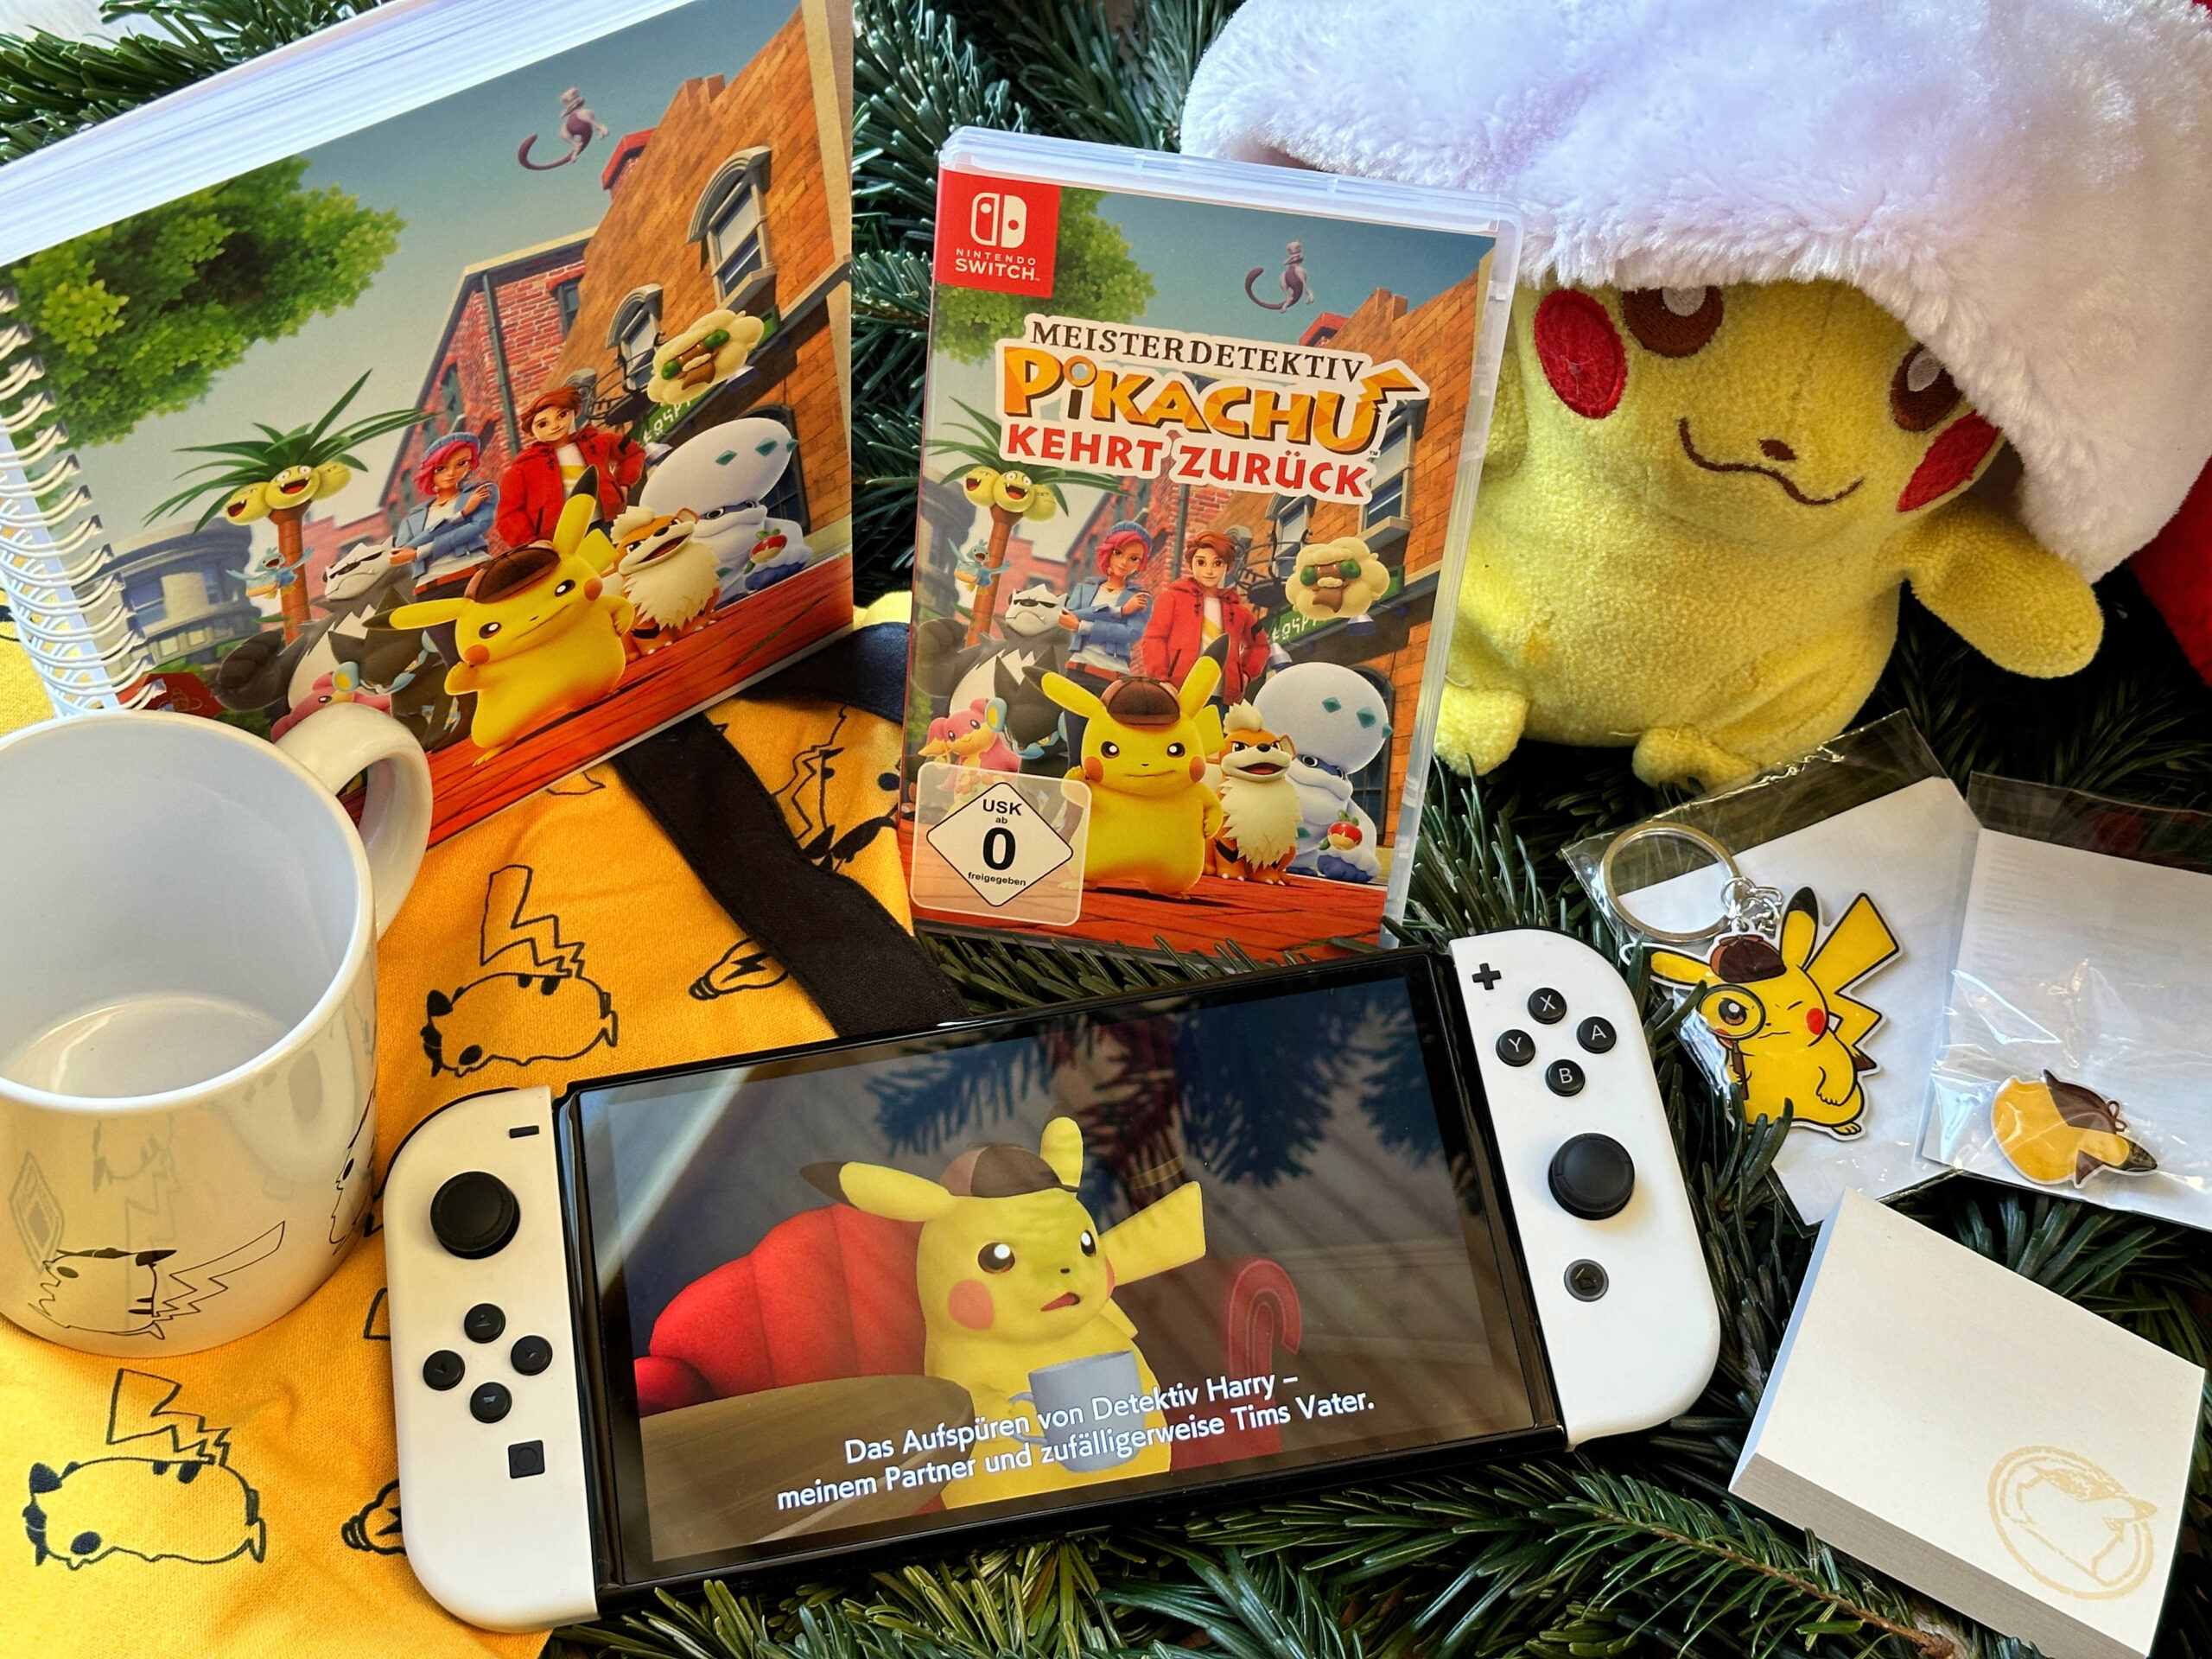 Weihnachtsgewinnspiel: zurück kehrt Meisterdetektiv Pikachu